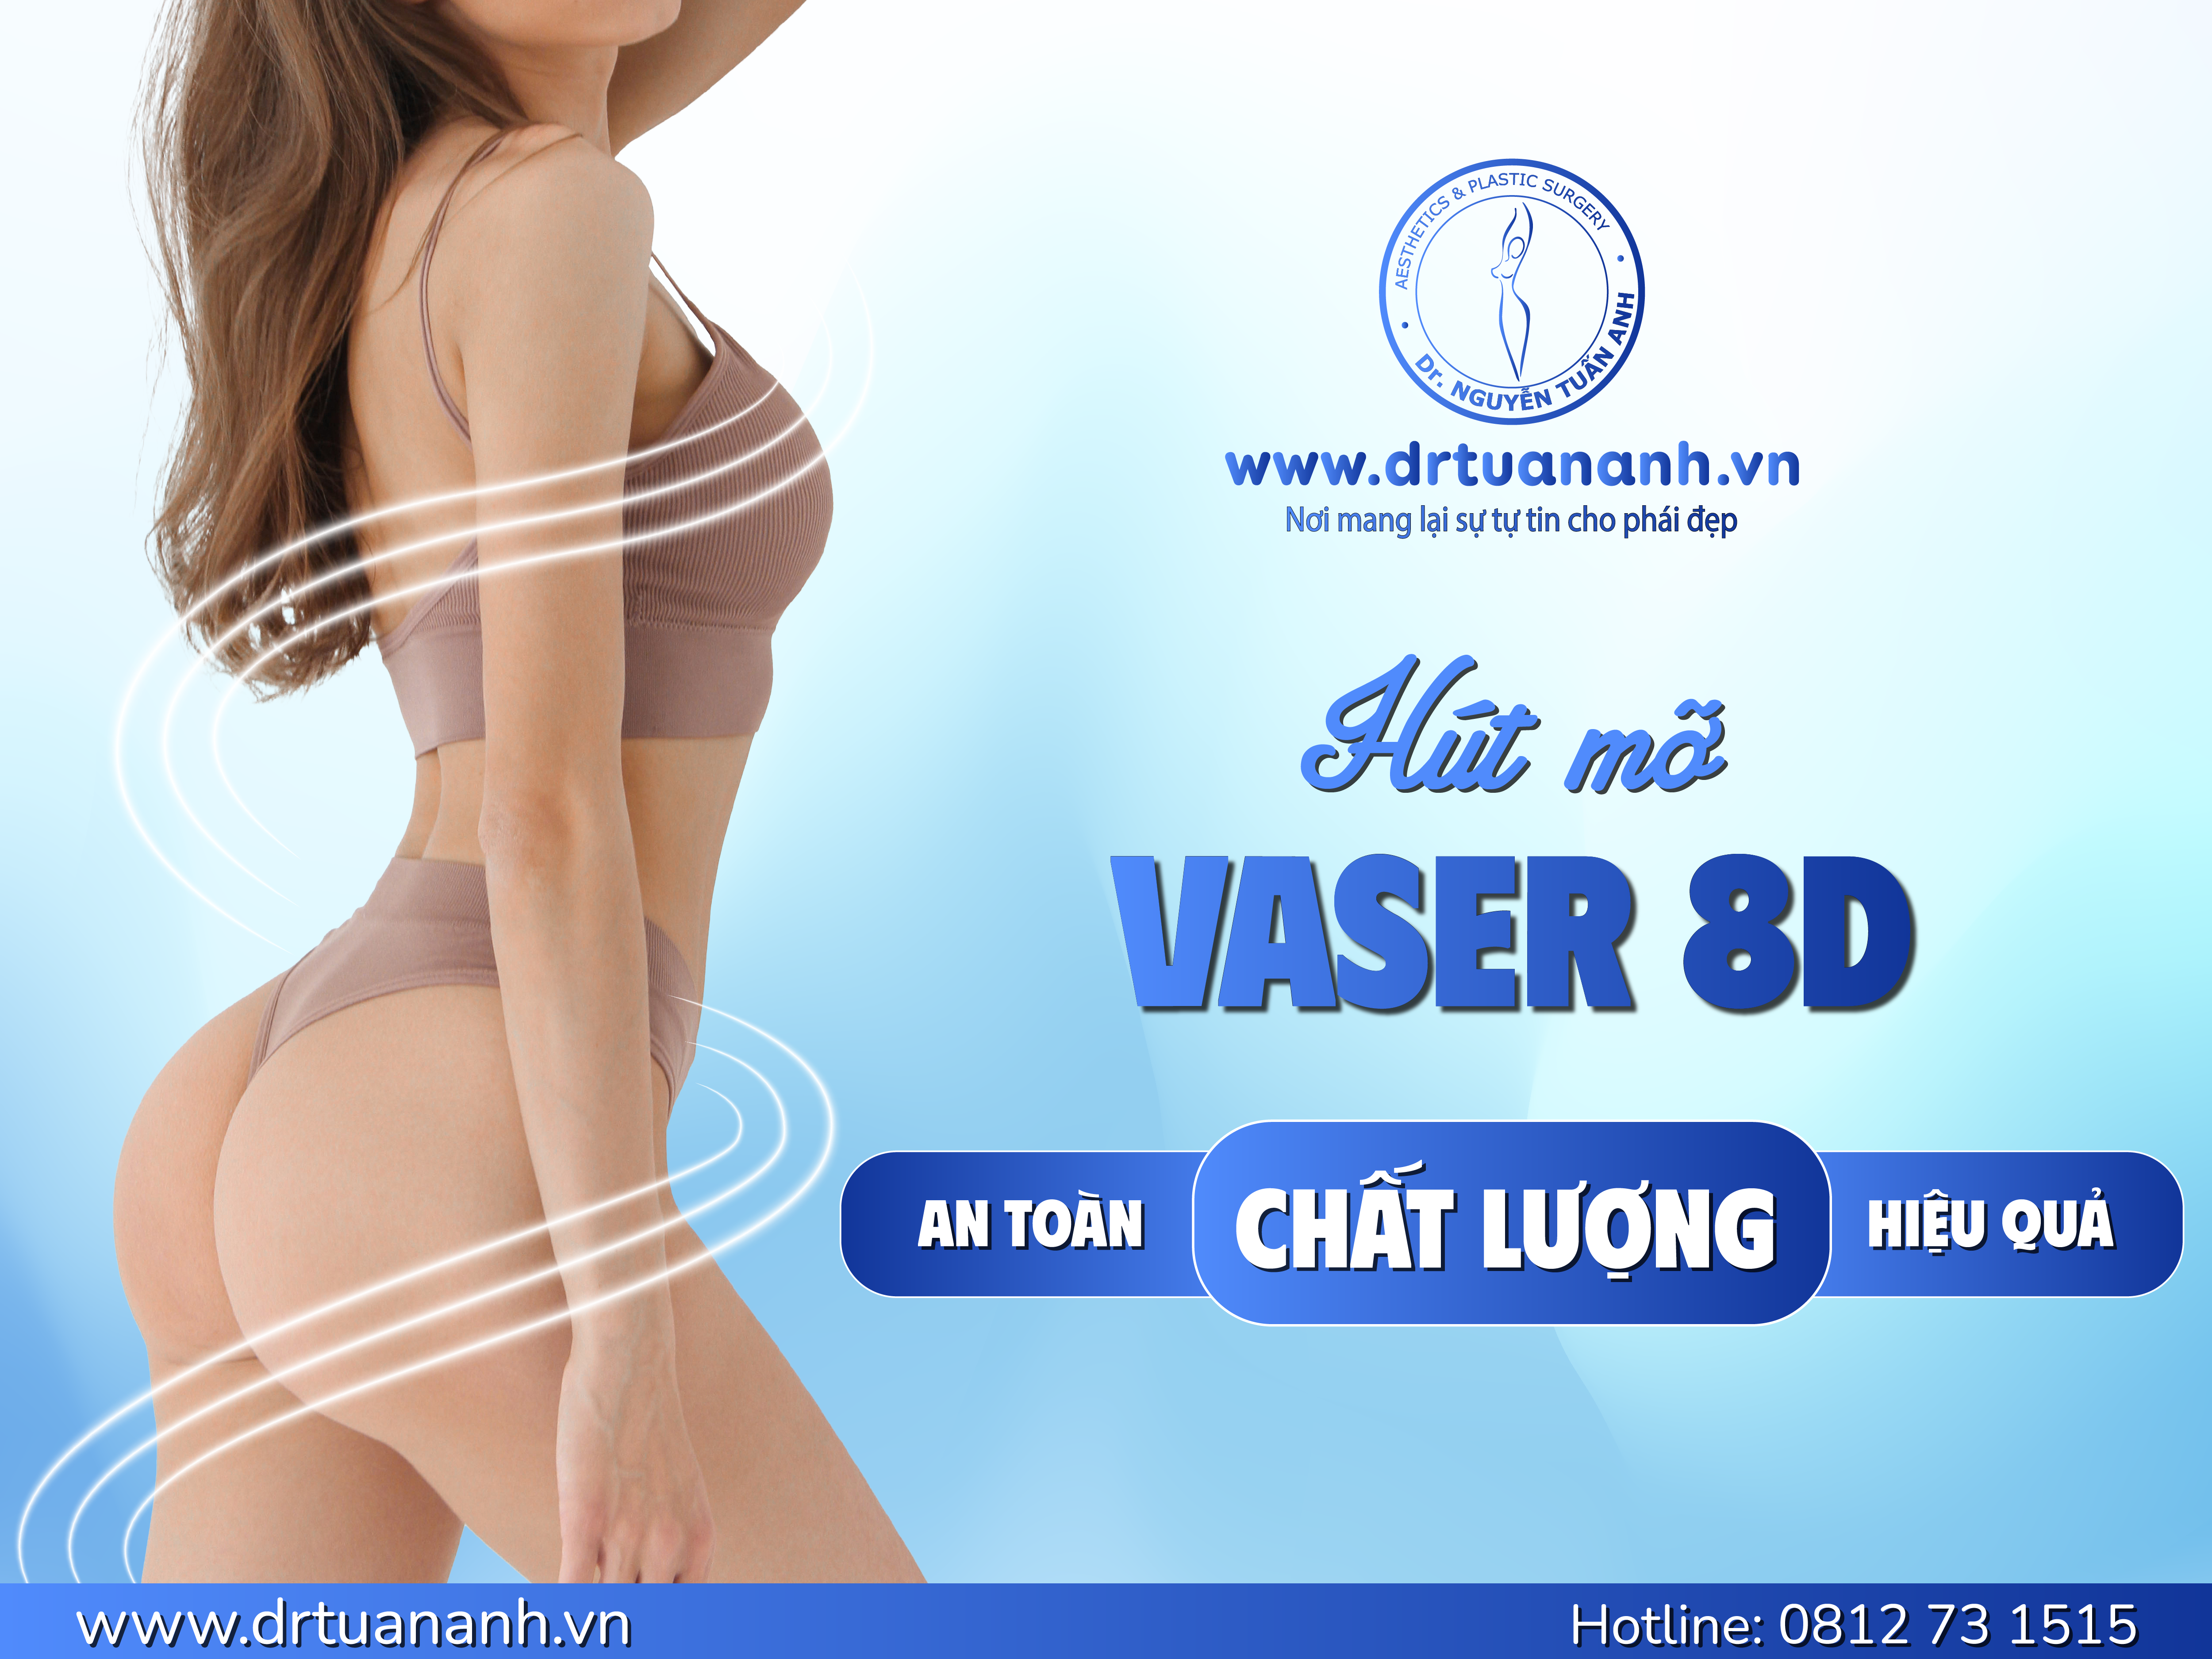 Hút mỡ công nghệ cao Vaser 8D tại Bác sĩ Nguyễn Tuấn Anh